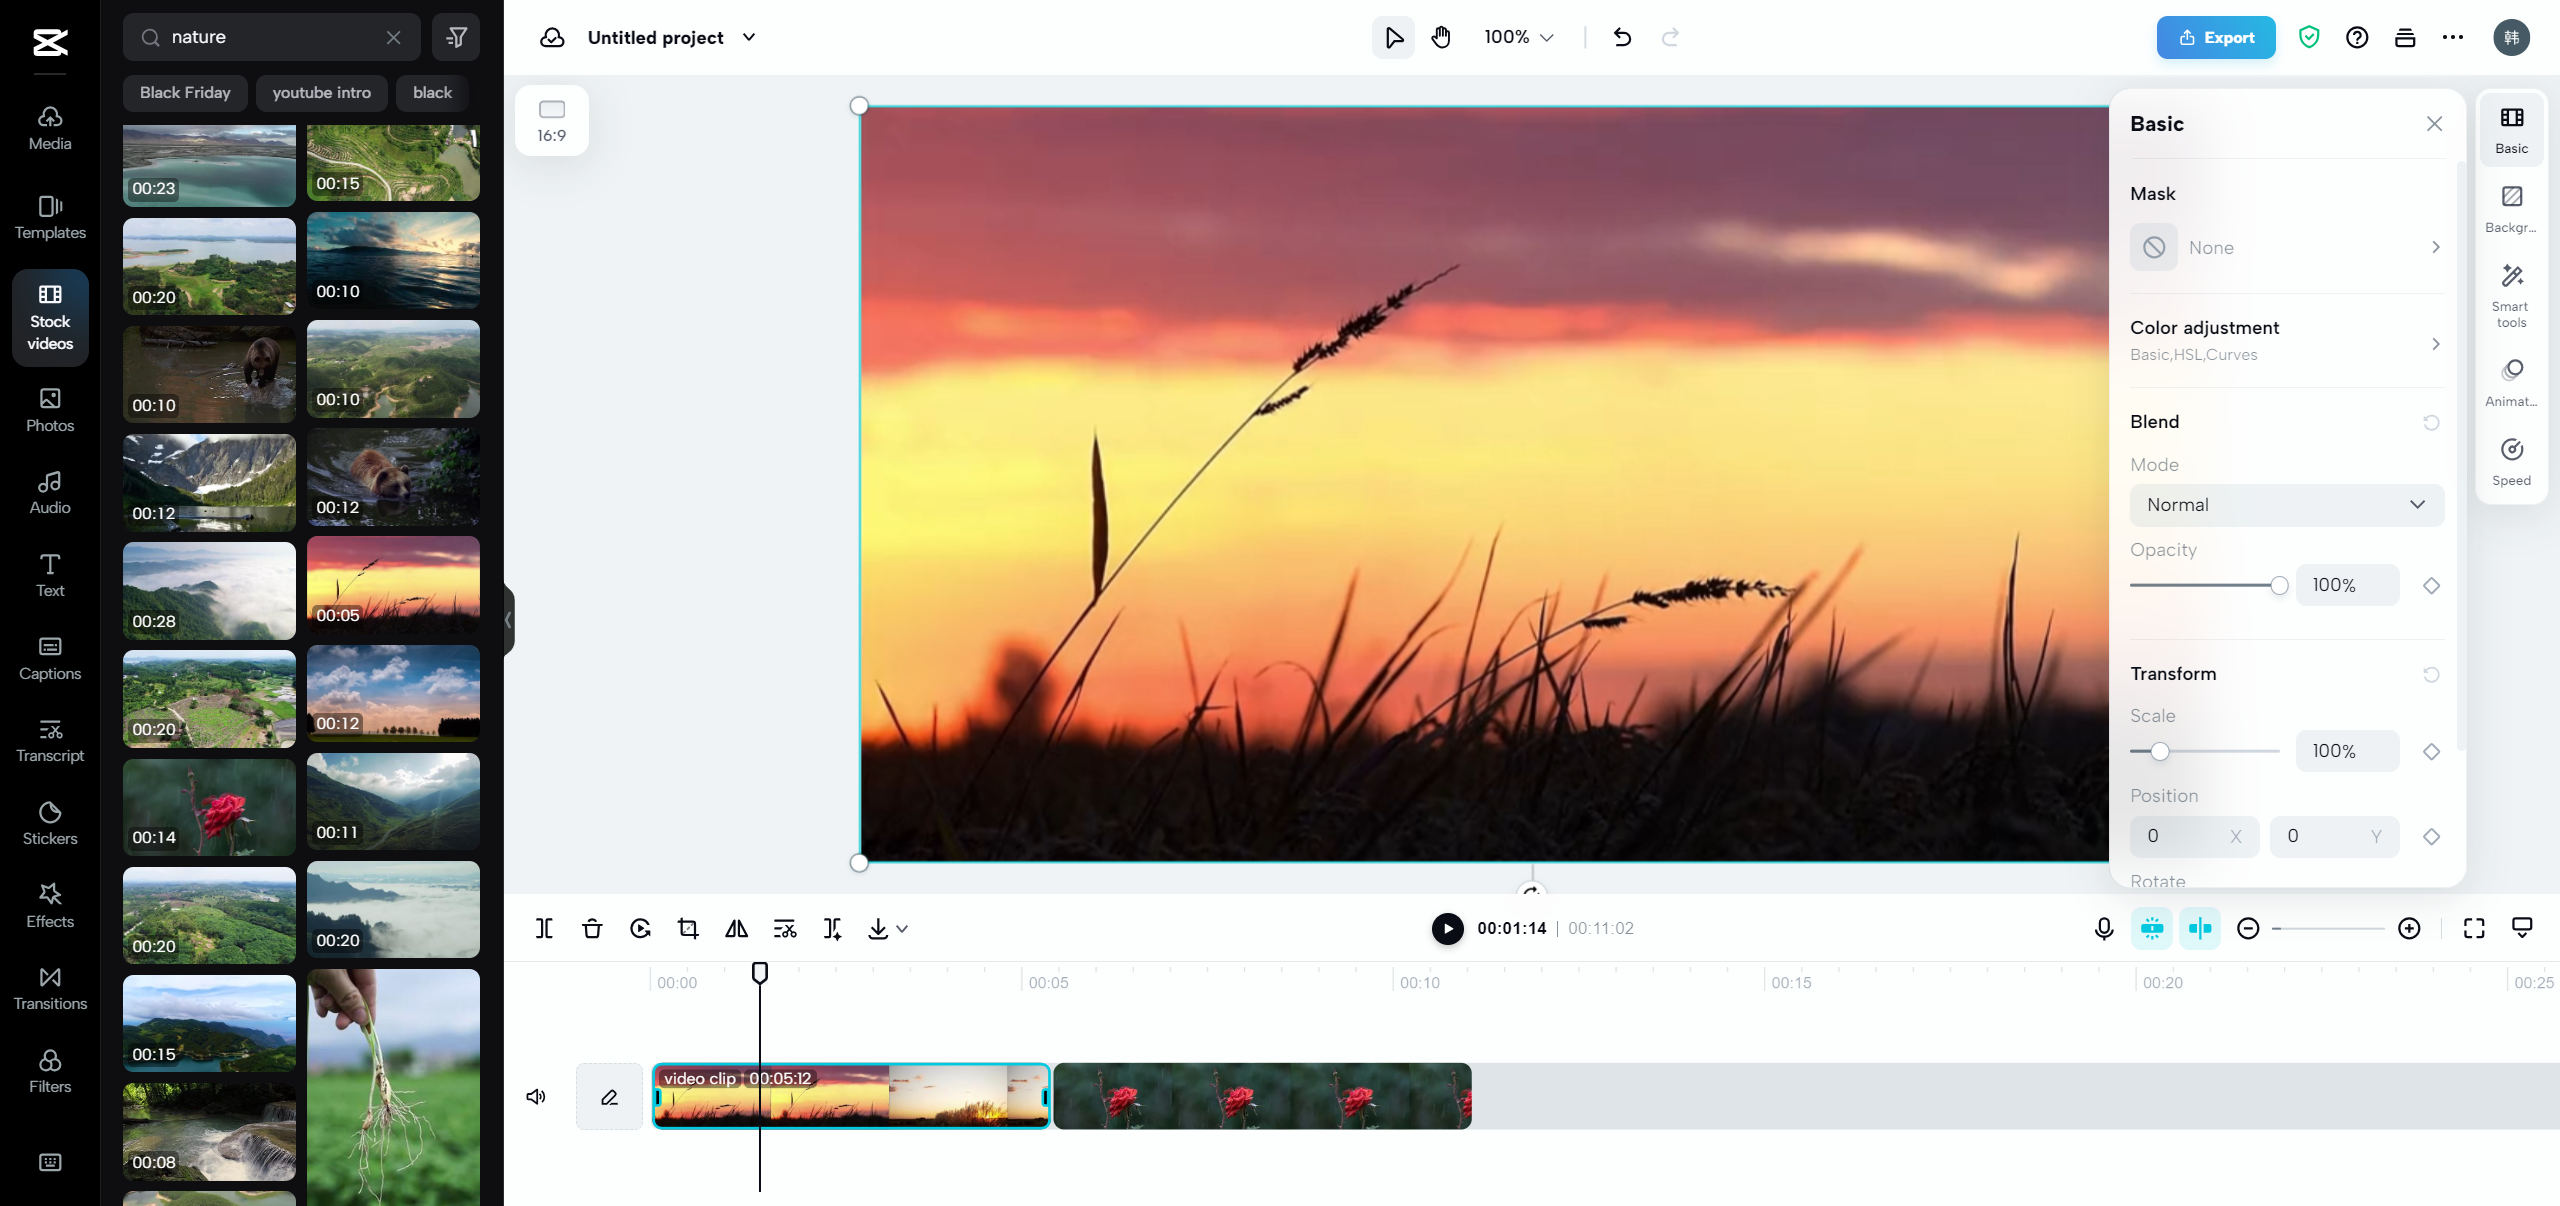 CapCut online looper: Create seamless loop videos in minutes